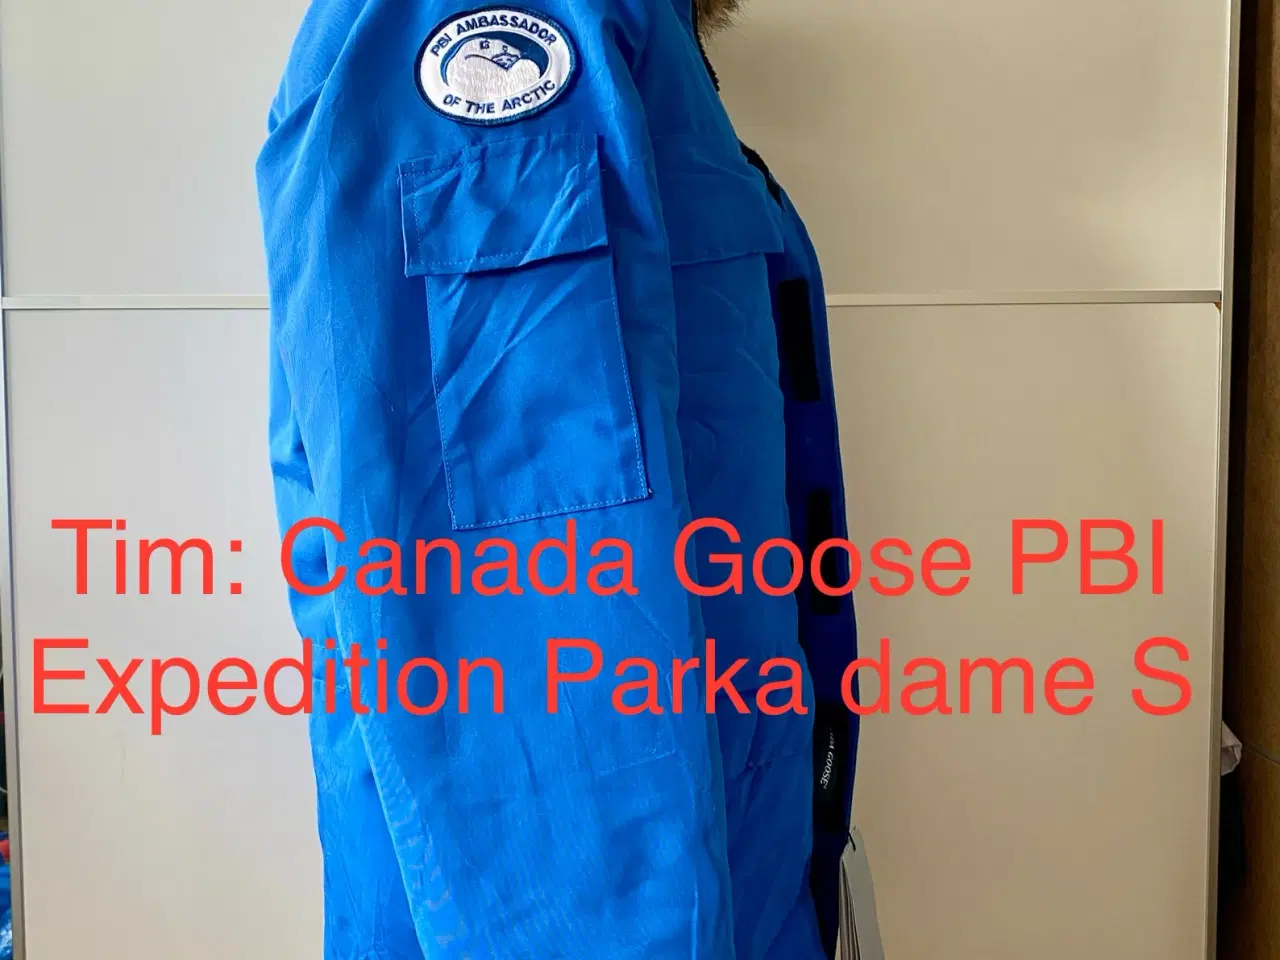 Billede 3 - Canada Goose Expedition Parka dame S